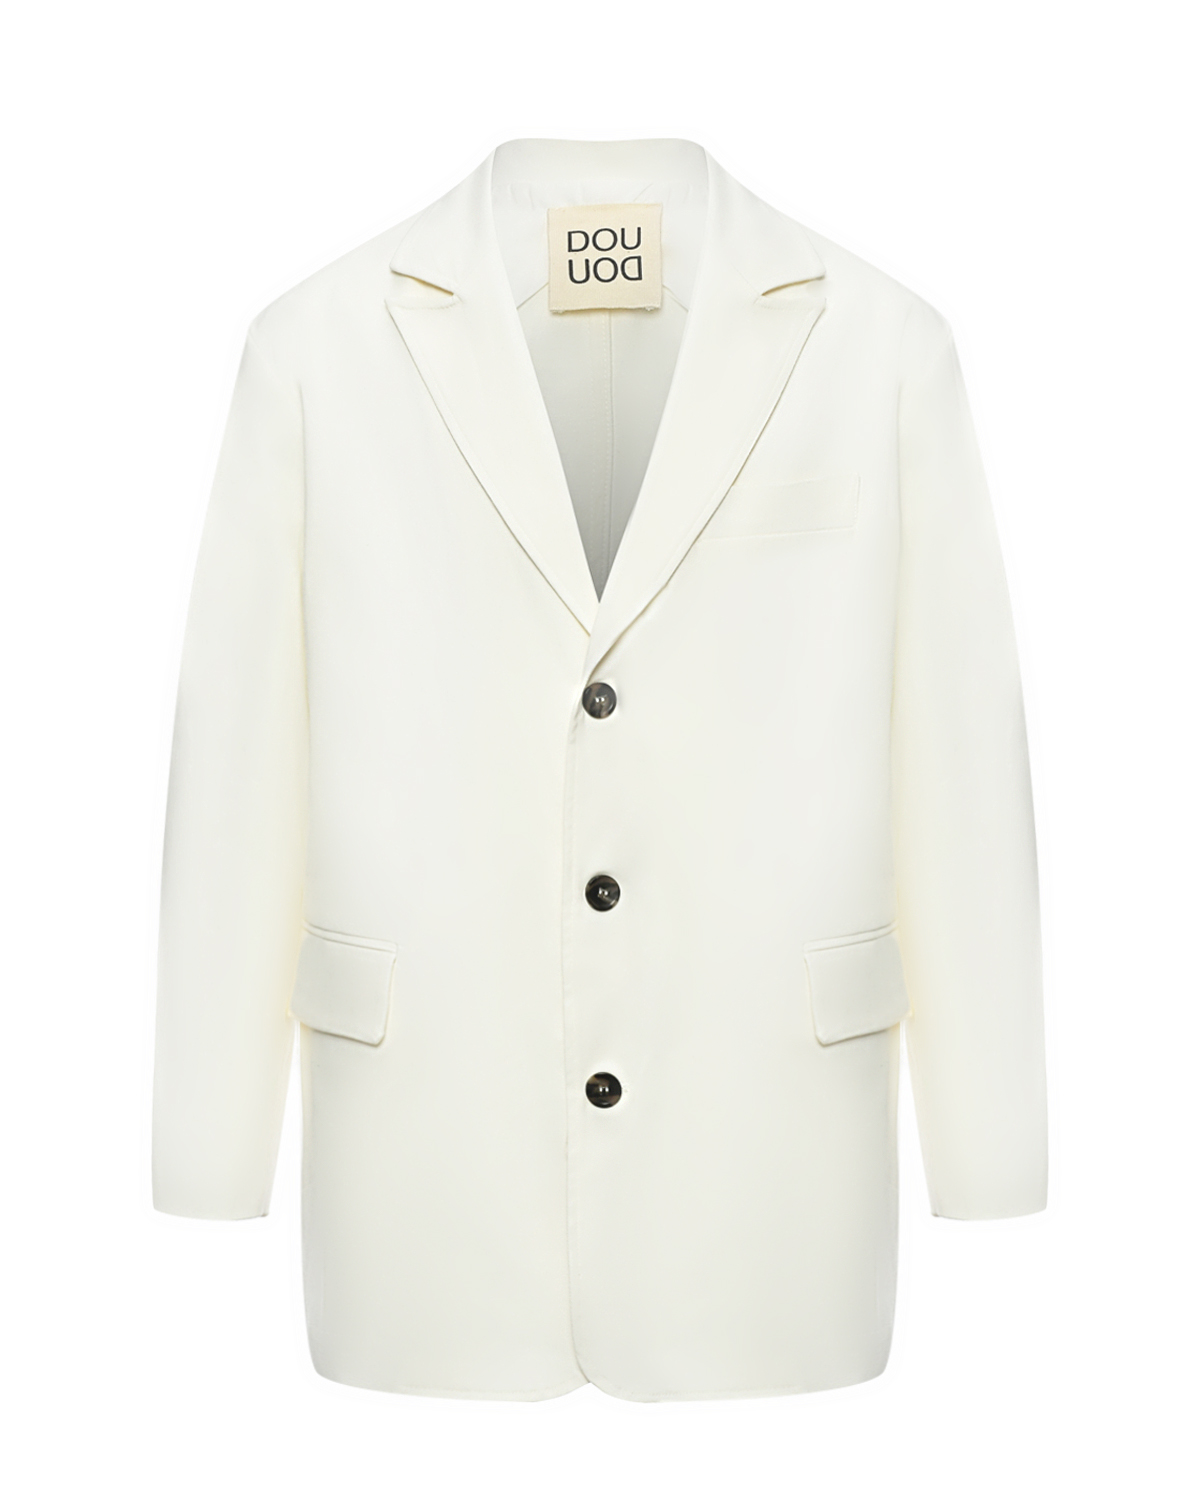 Однобортный пиджак, белый DOUUOD пиджак оверсайз белый glvr s